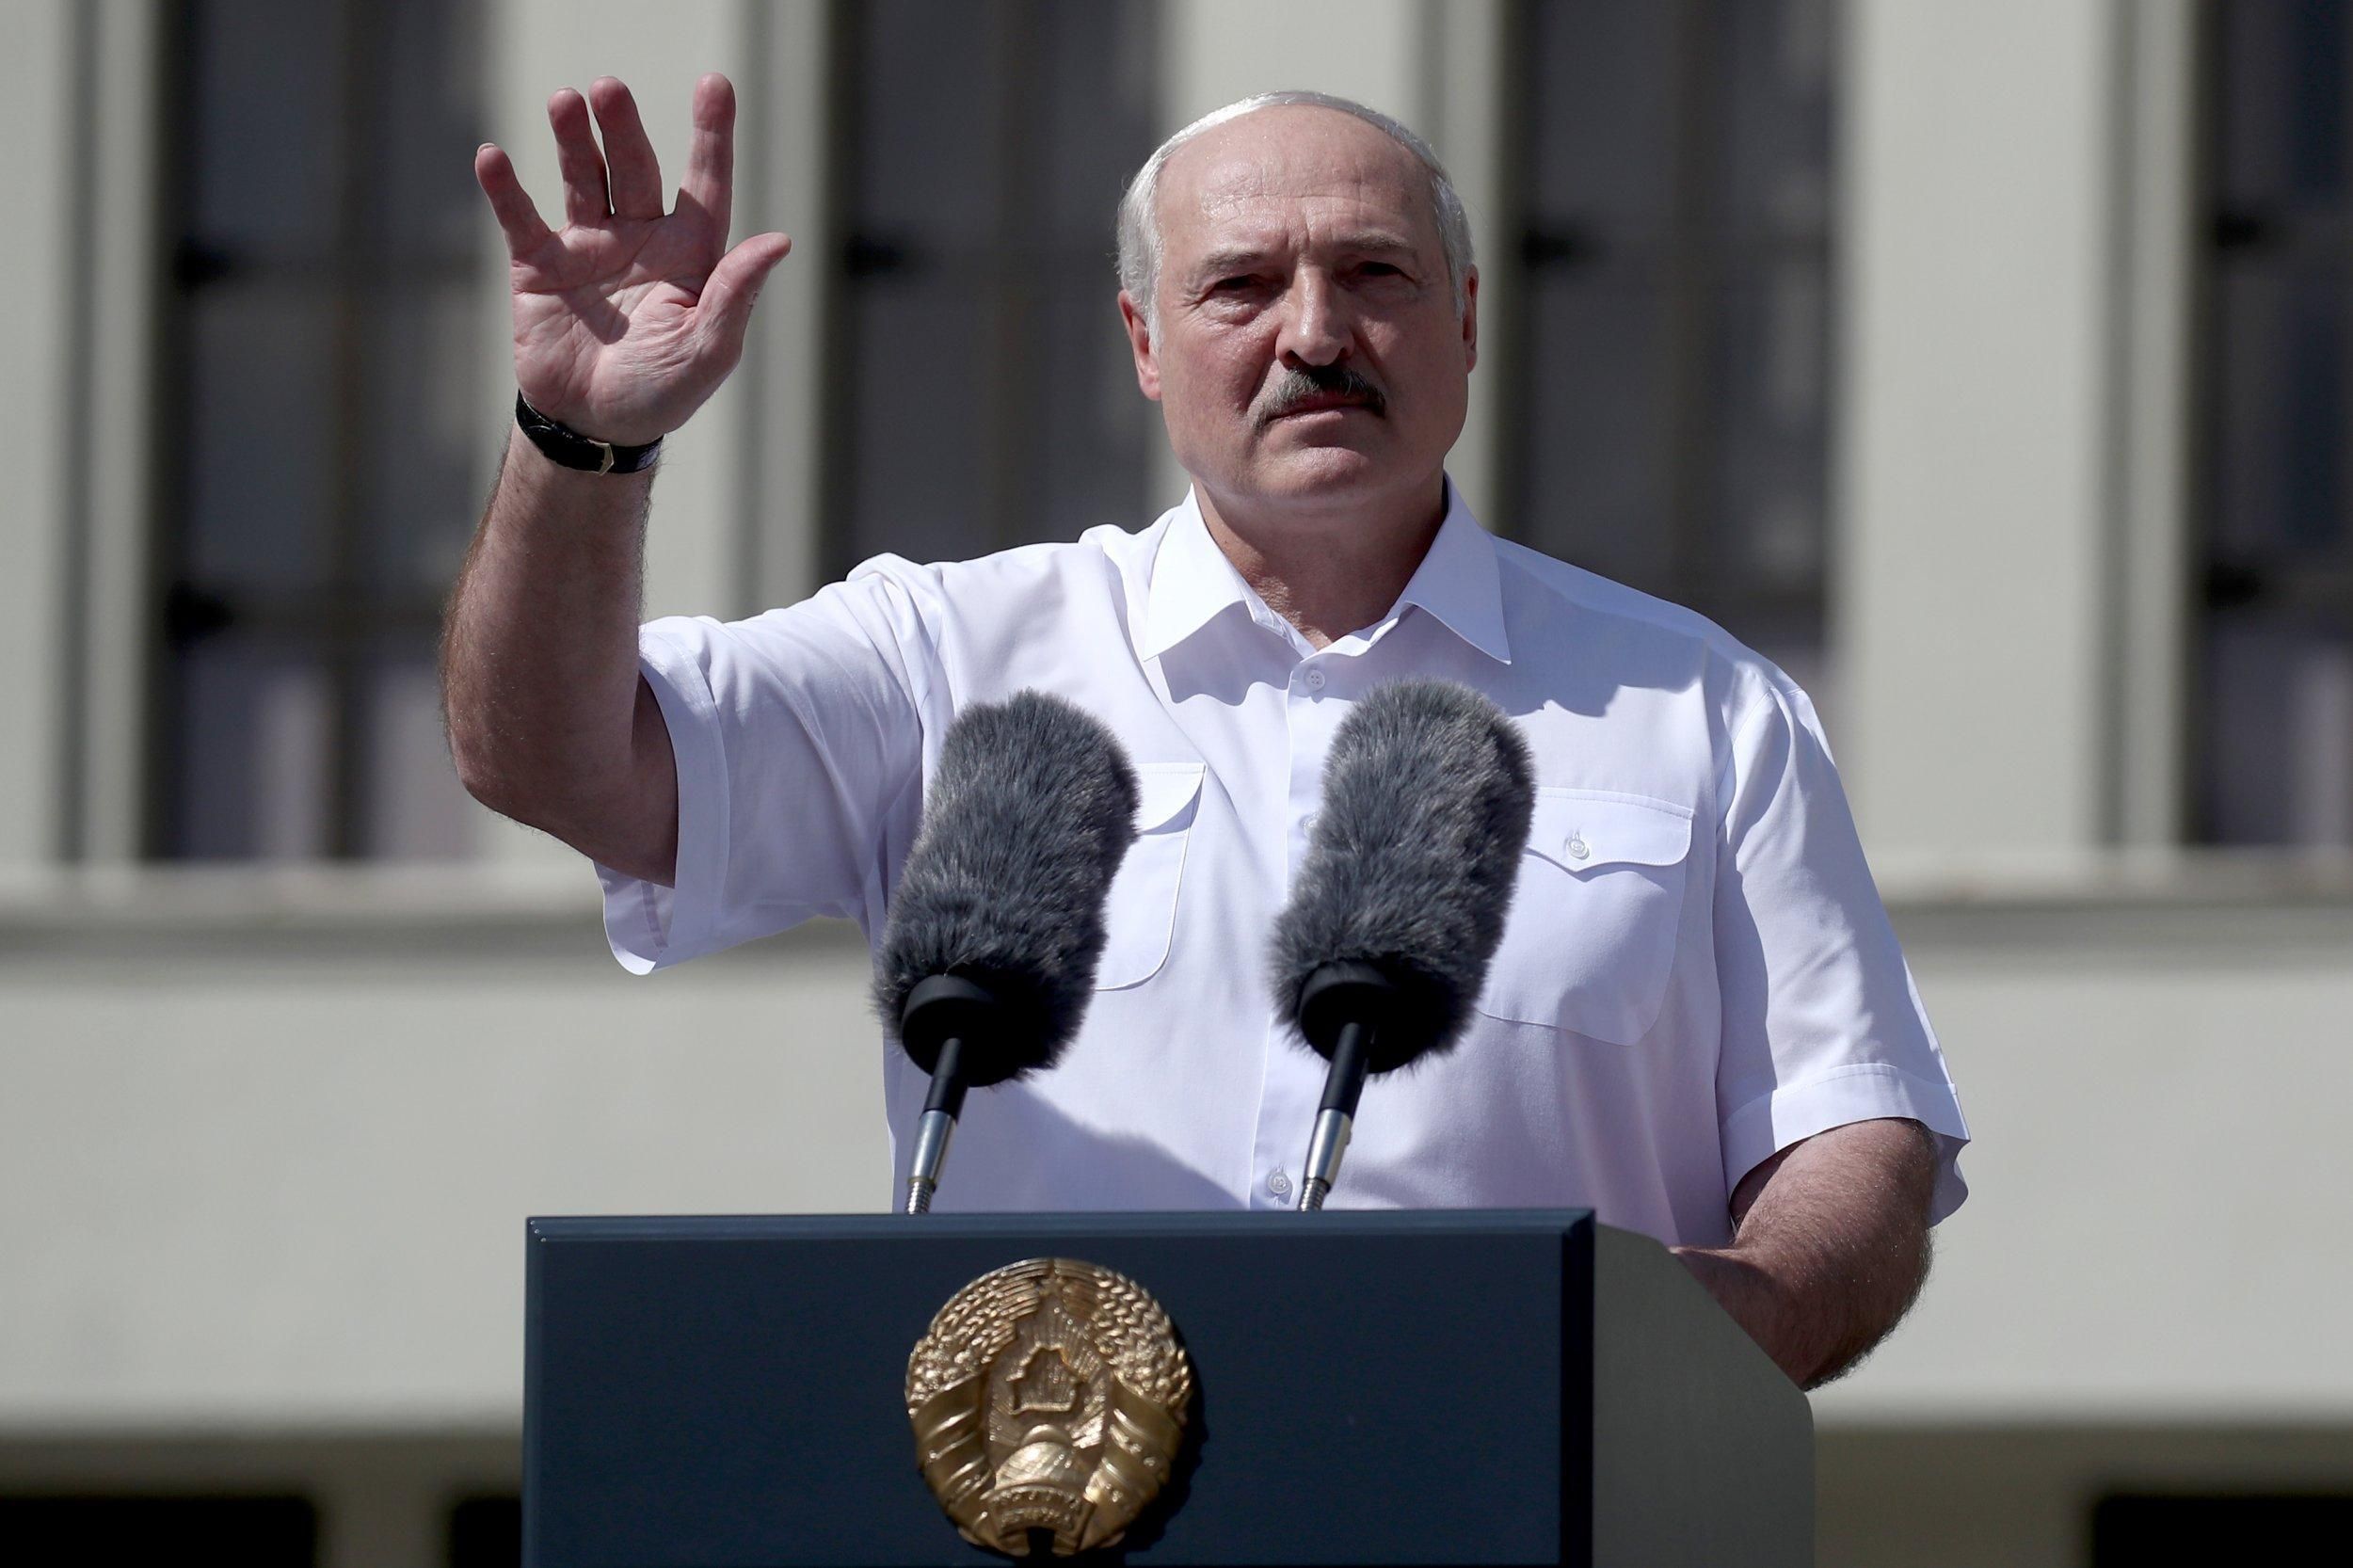 Показал видео с критикой Лукашенко: в Беларуси учителя приговорили к 1,5 годам строгого режима